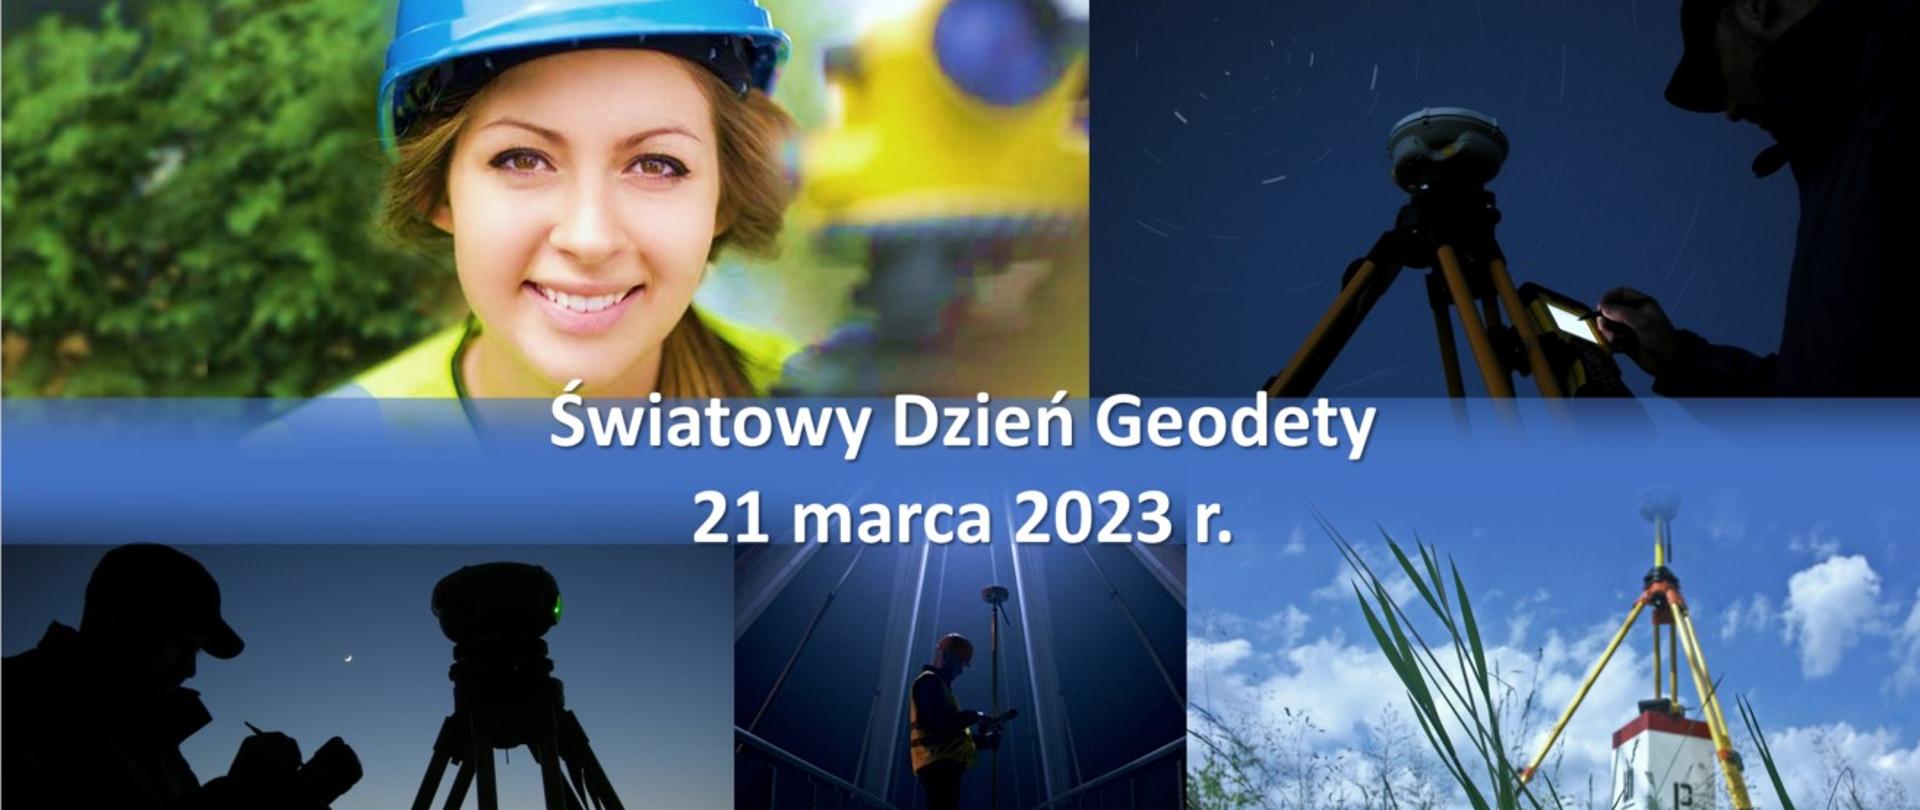 Ilustracja przedstawia grafikę ukazującą geodetów w różnych sytuacjach w pracy z napisem "Światowy Dzień Geodety 21 marca 2023 r." 